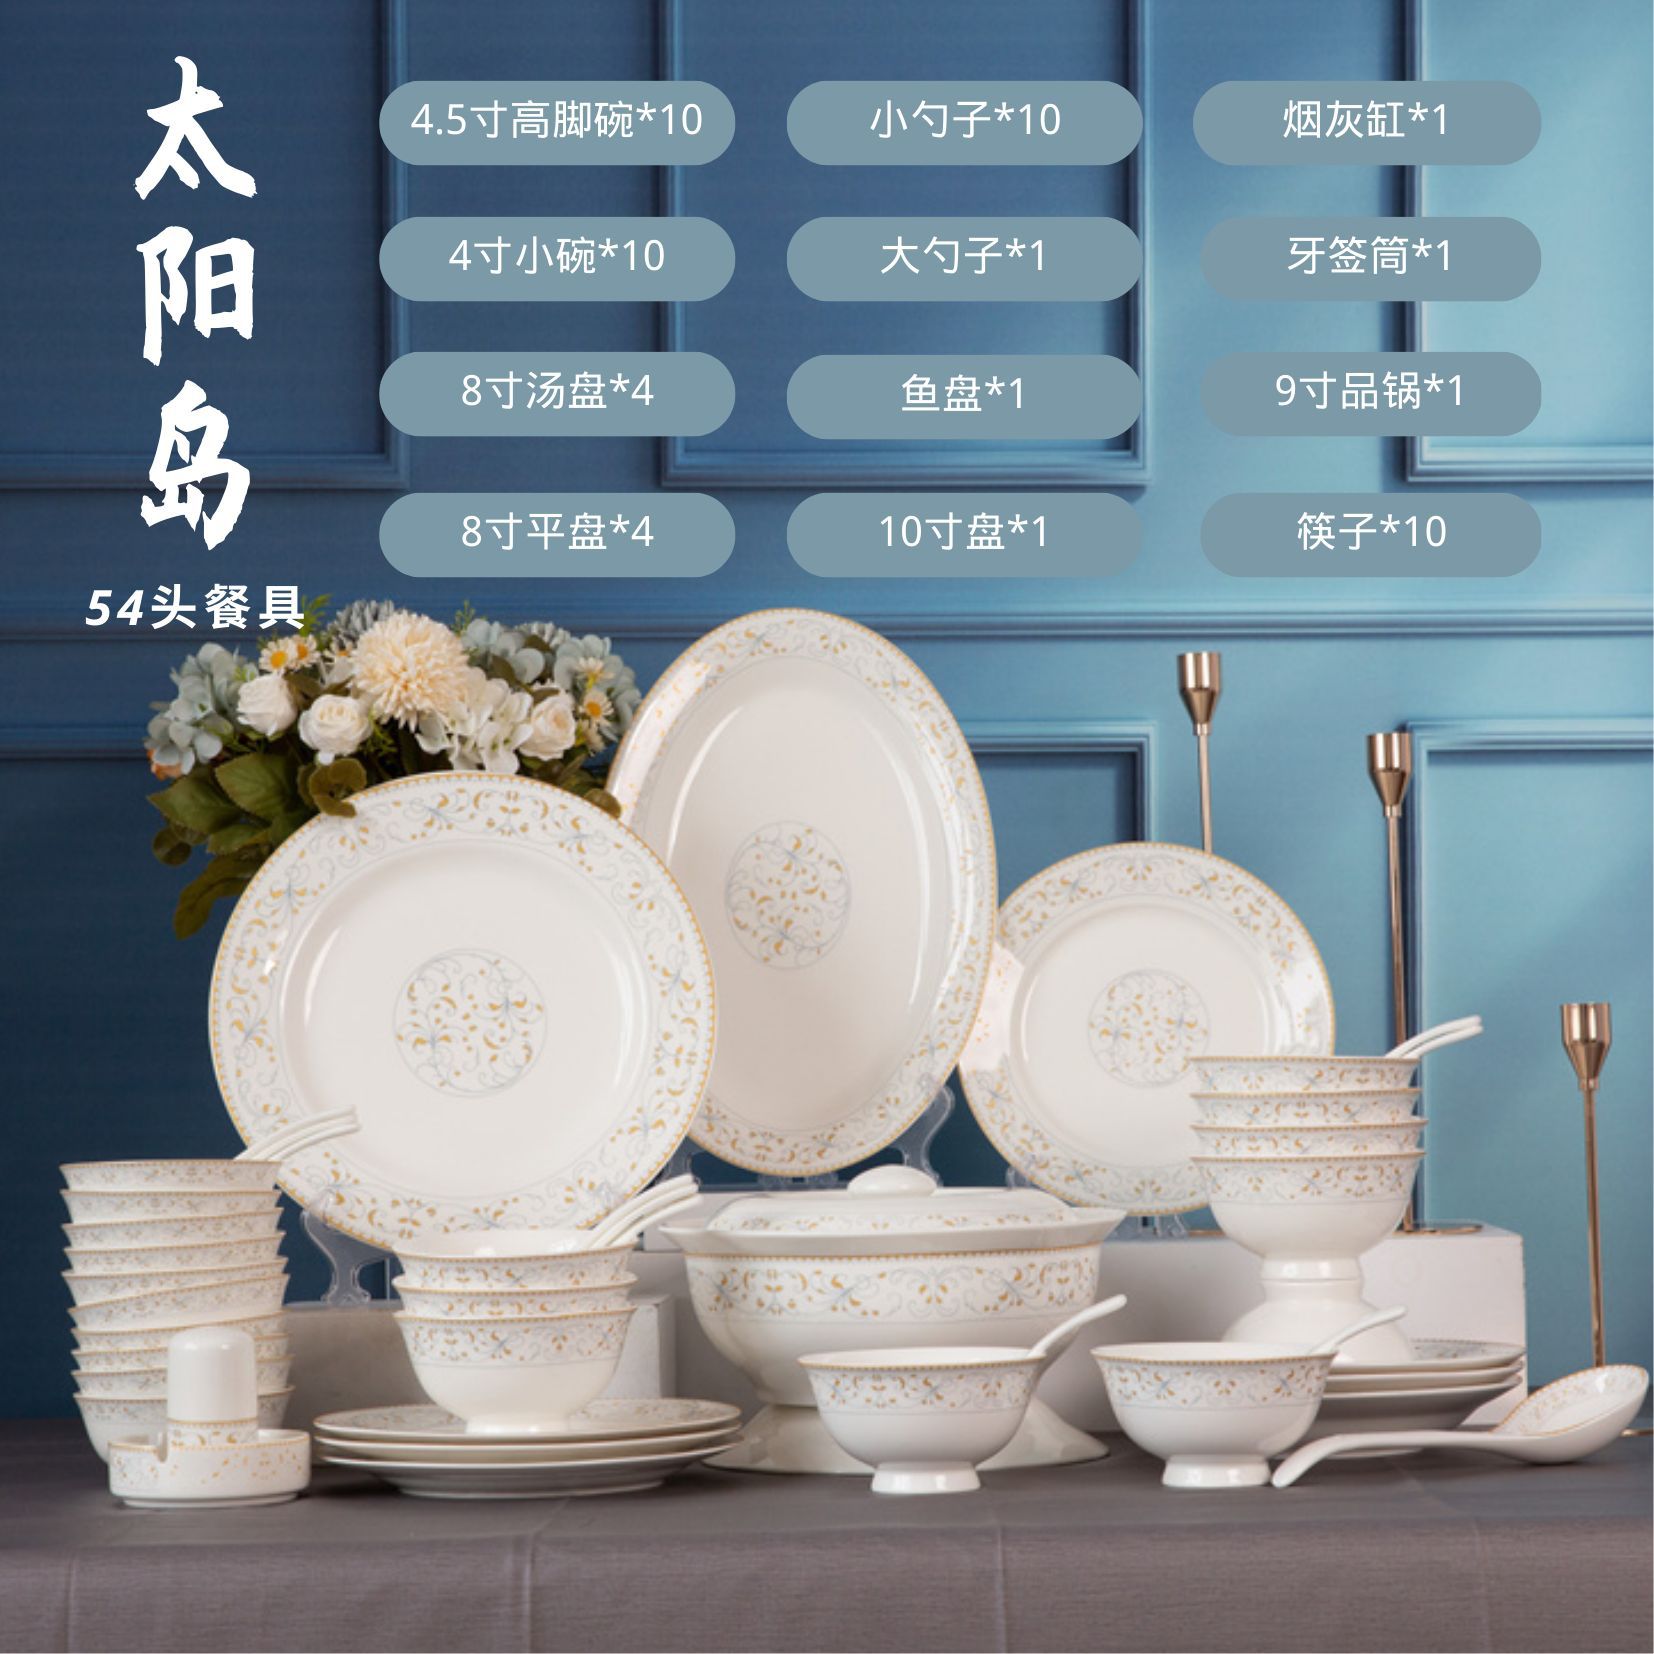 碗餐具家用用品厨房碗碟礼品套装陶瓷餐盘太阳岛全套简约骨瓷盘子